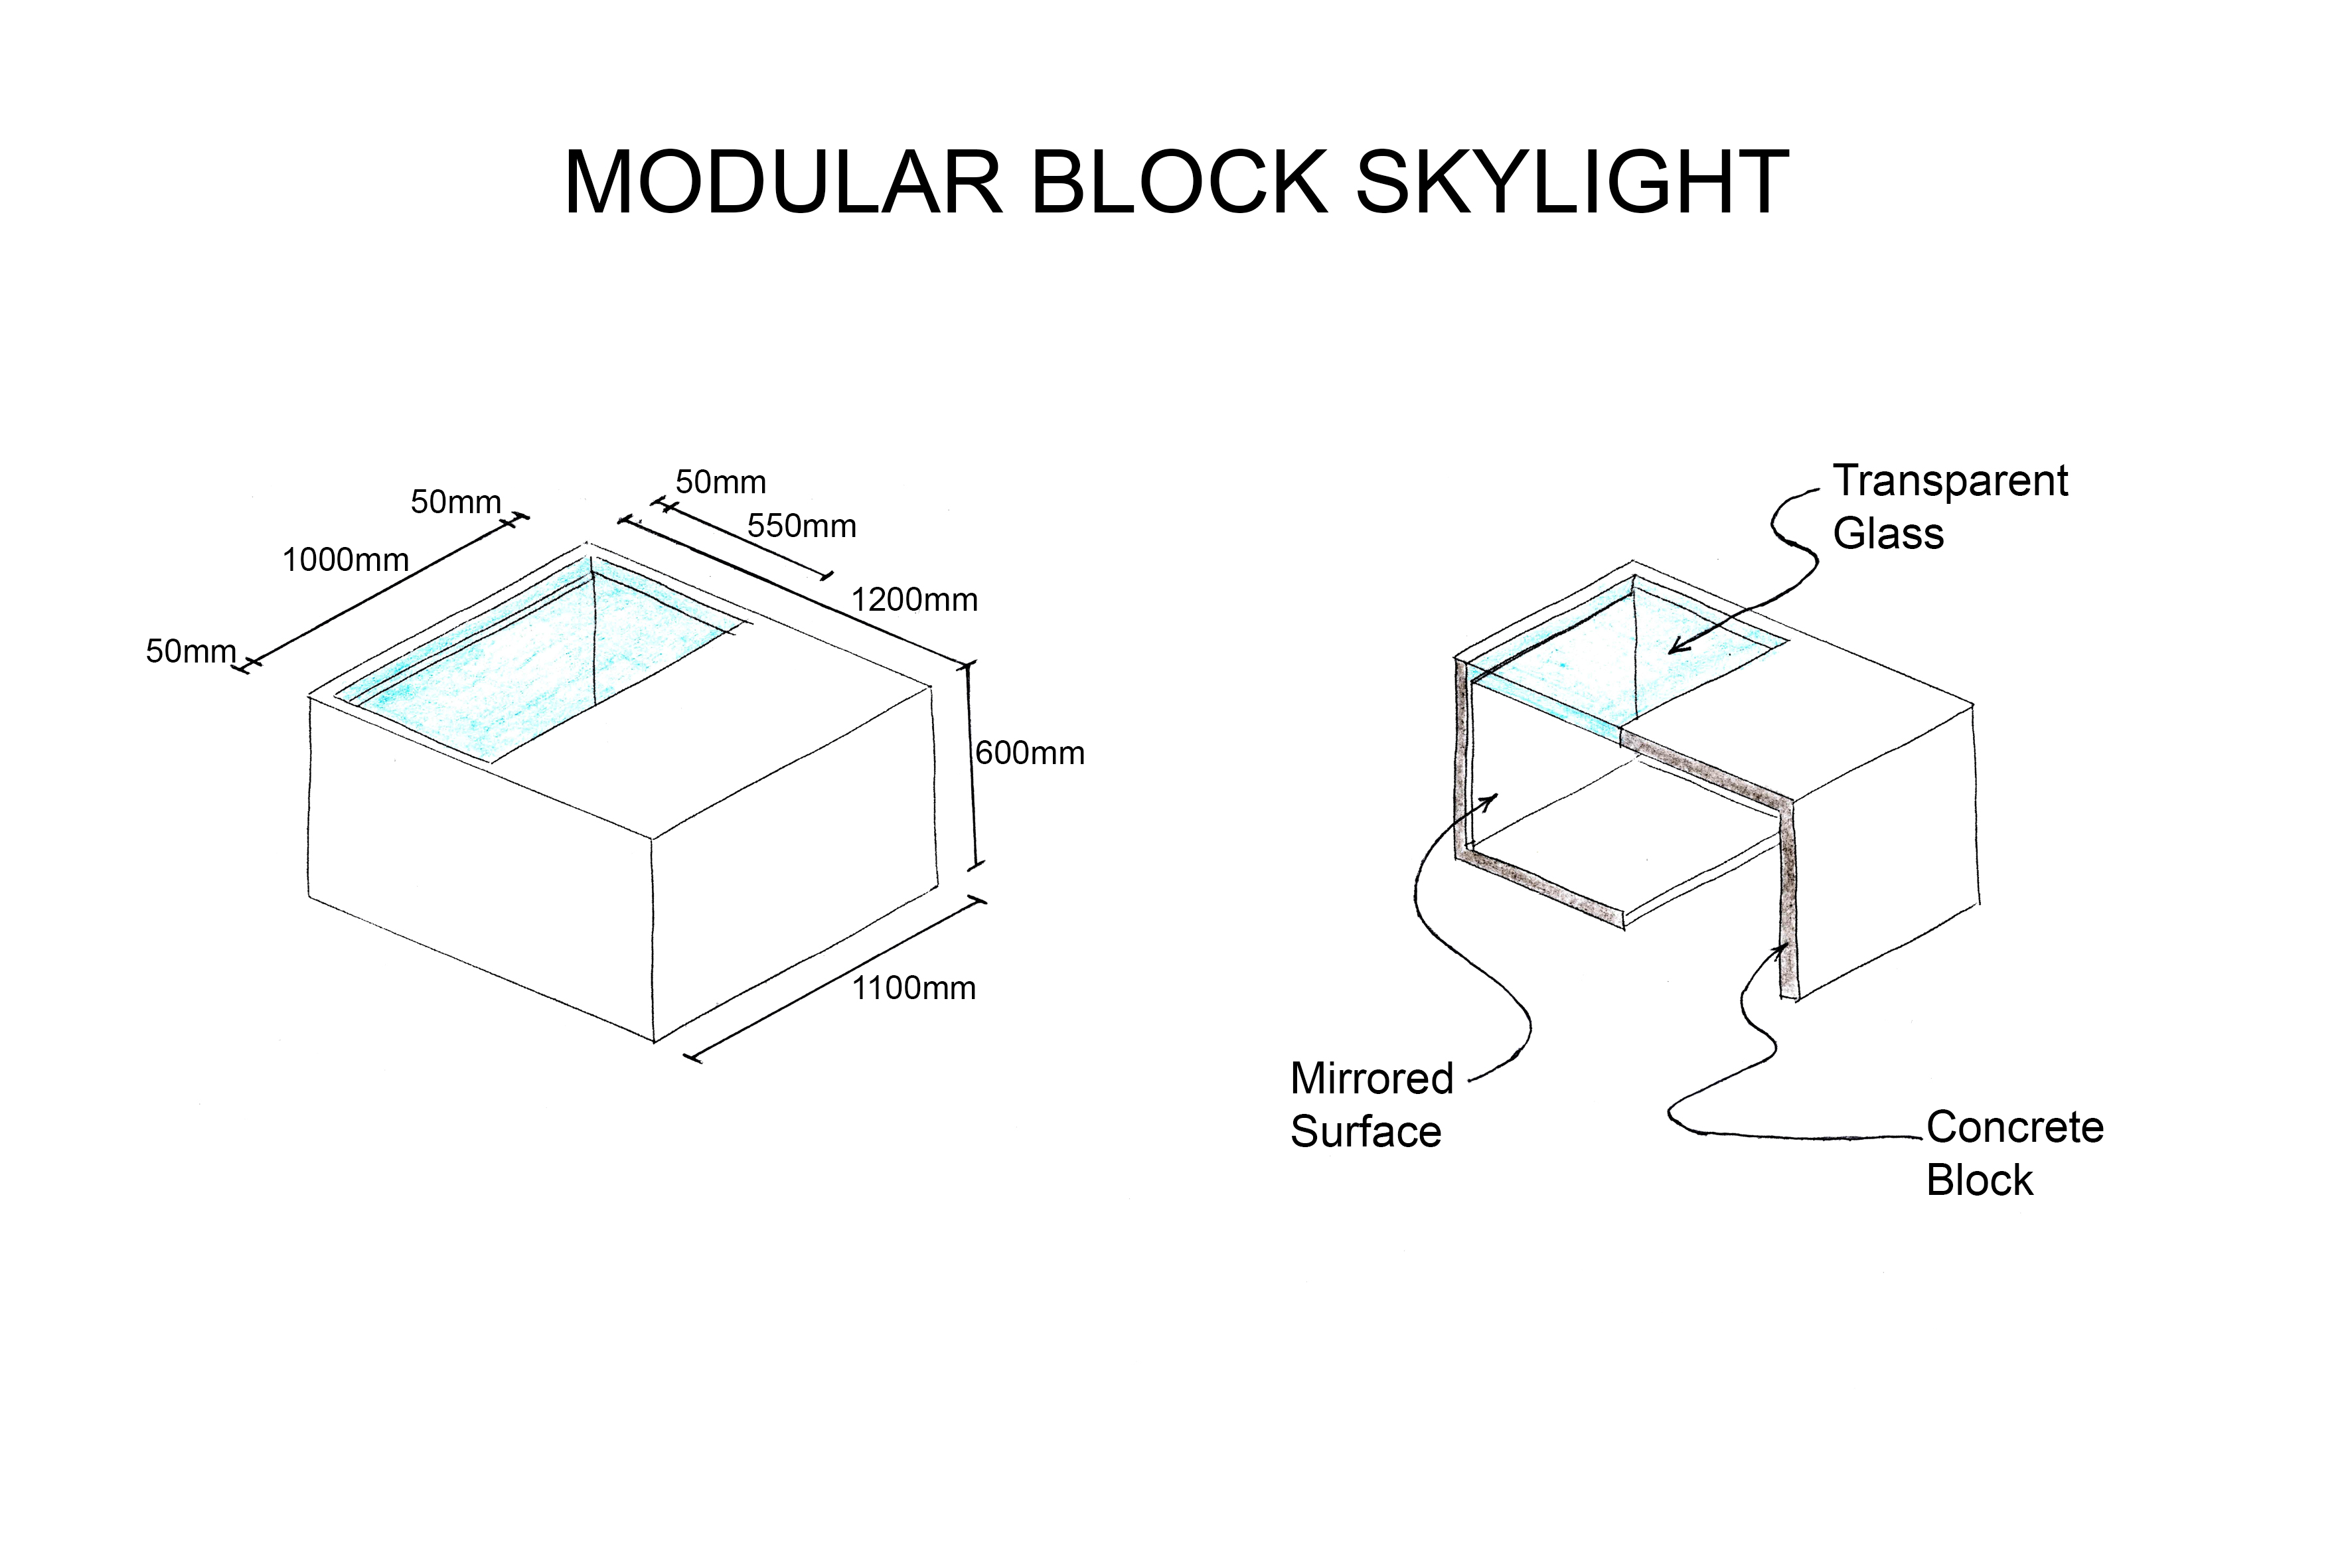 Modular Block Skylight